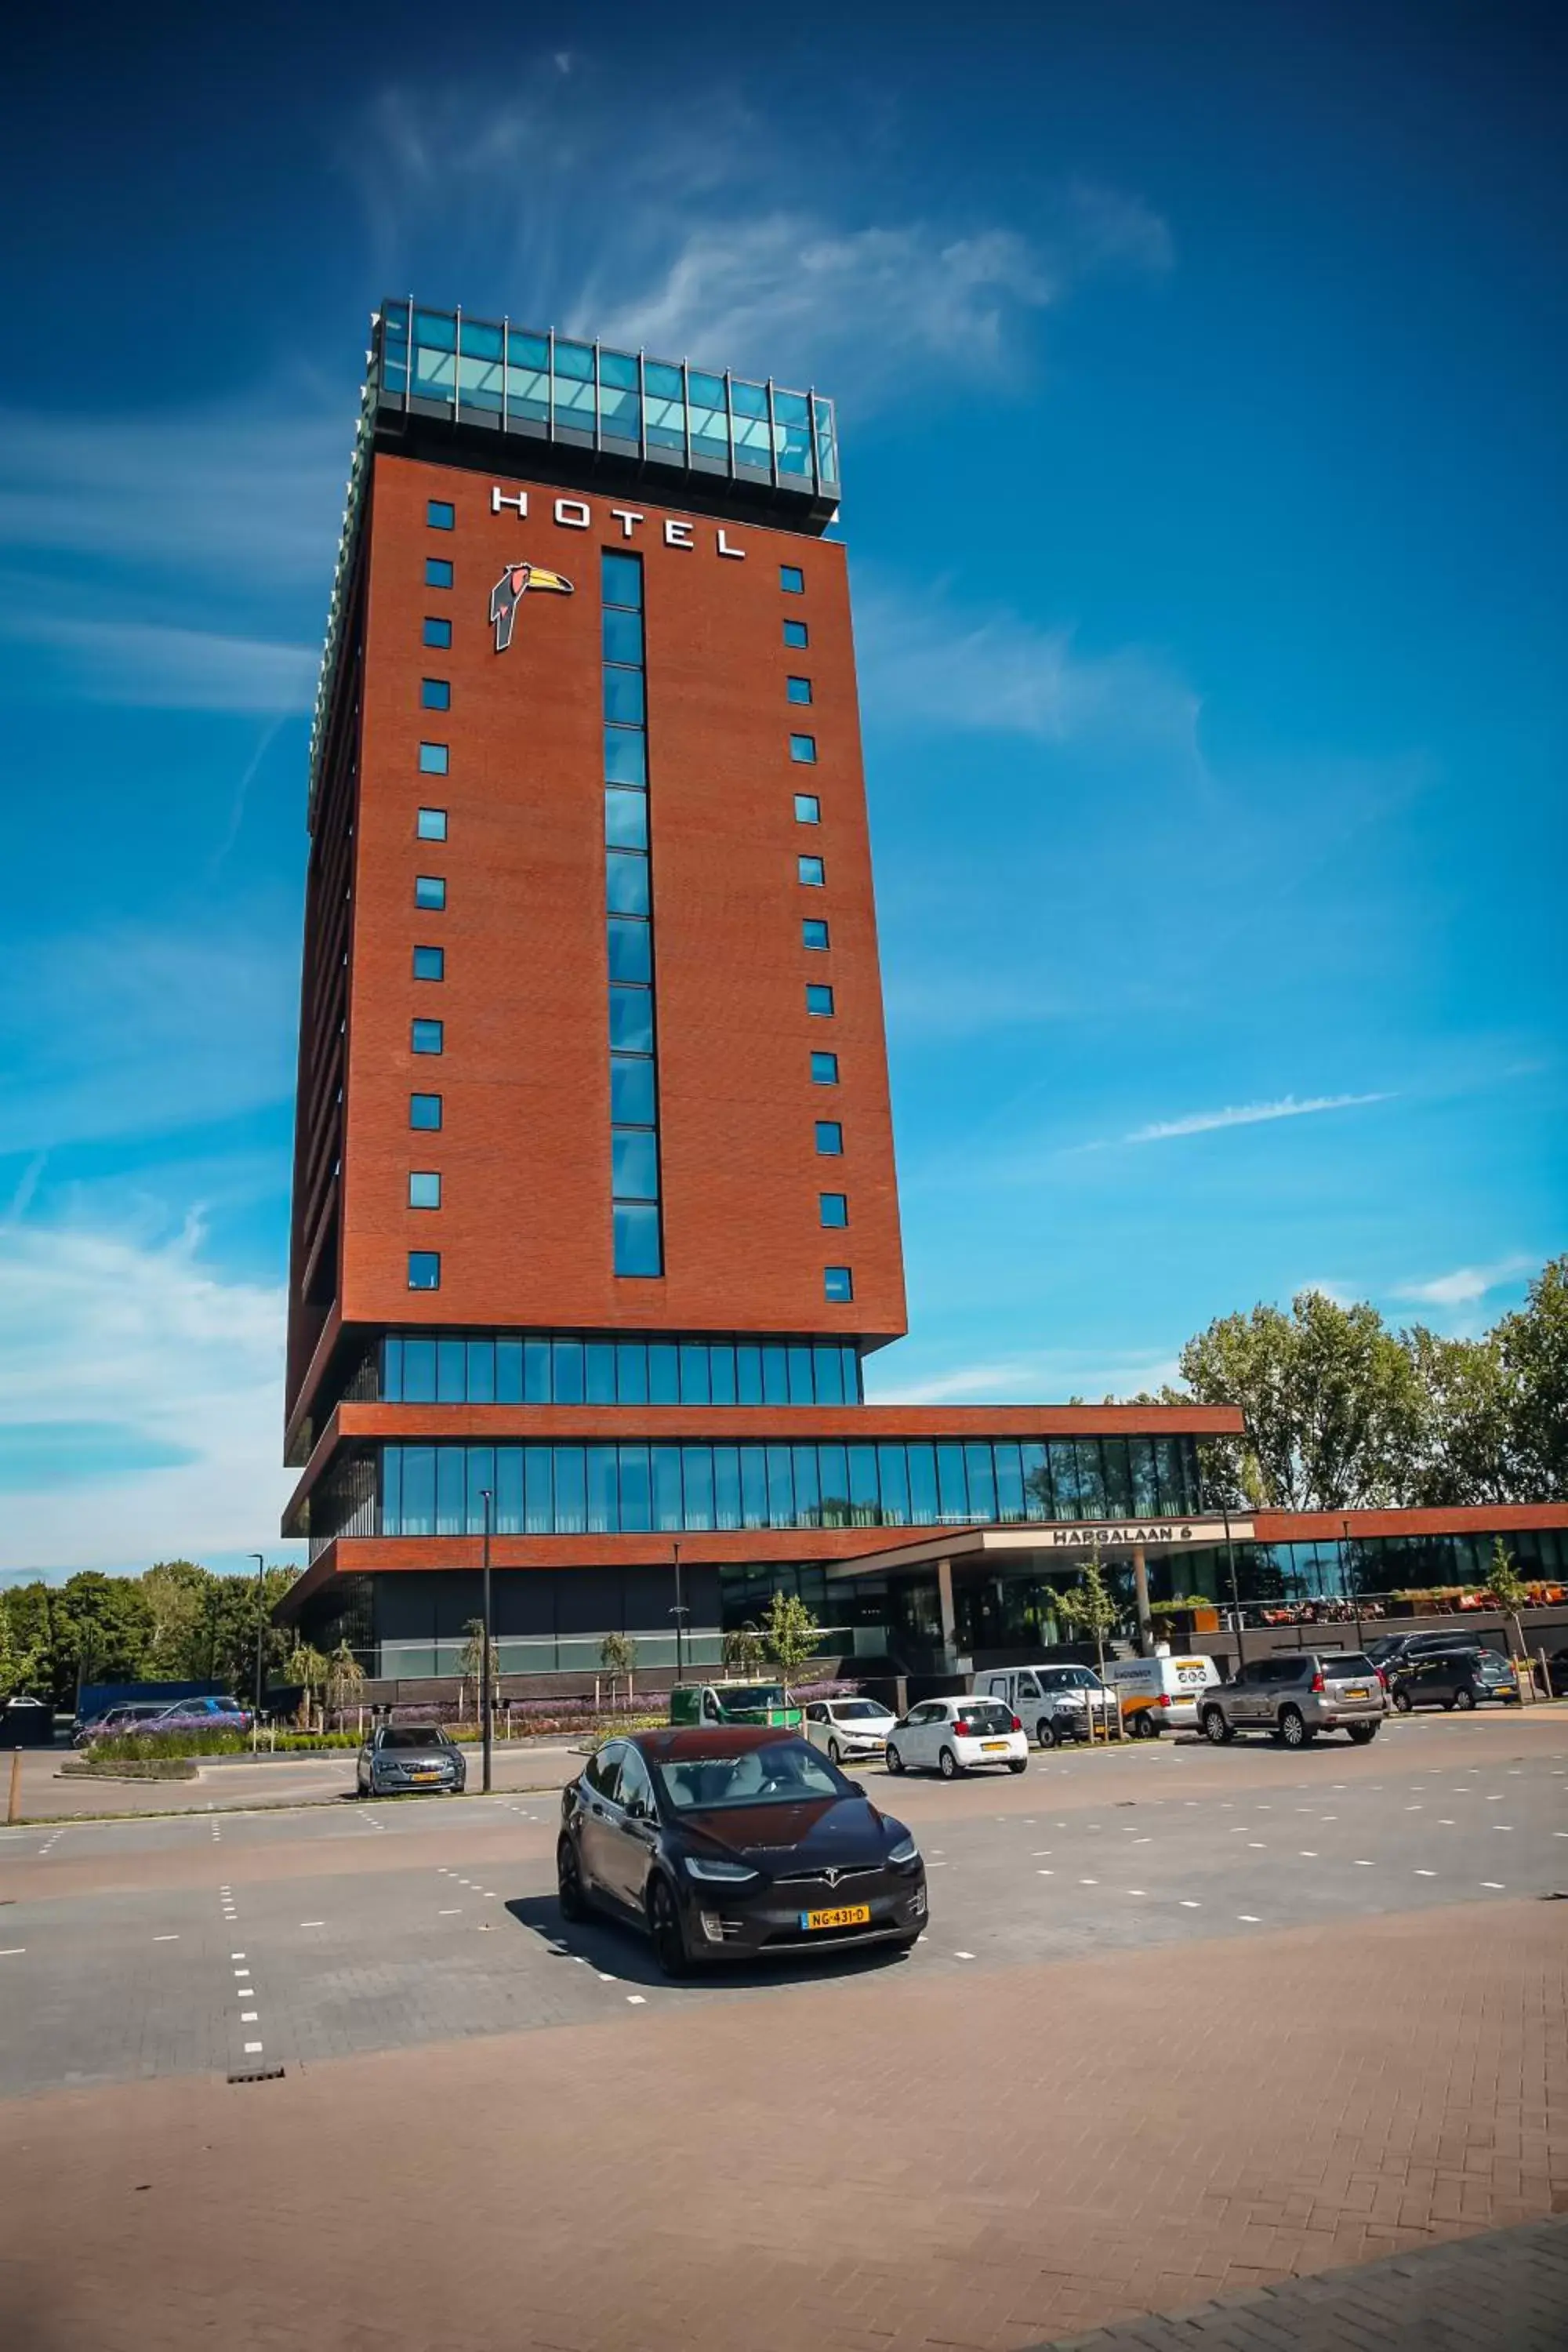 Property Building in Van der Valk Hotel Schiedam